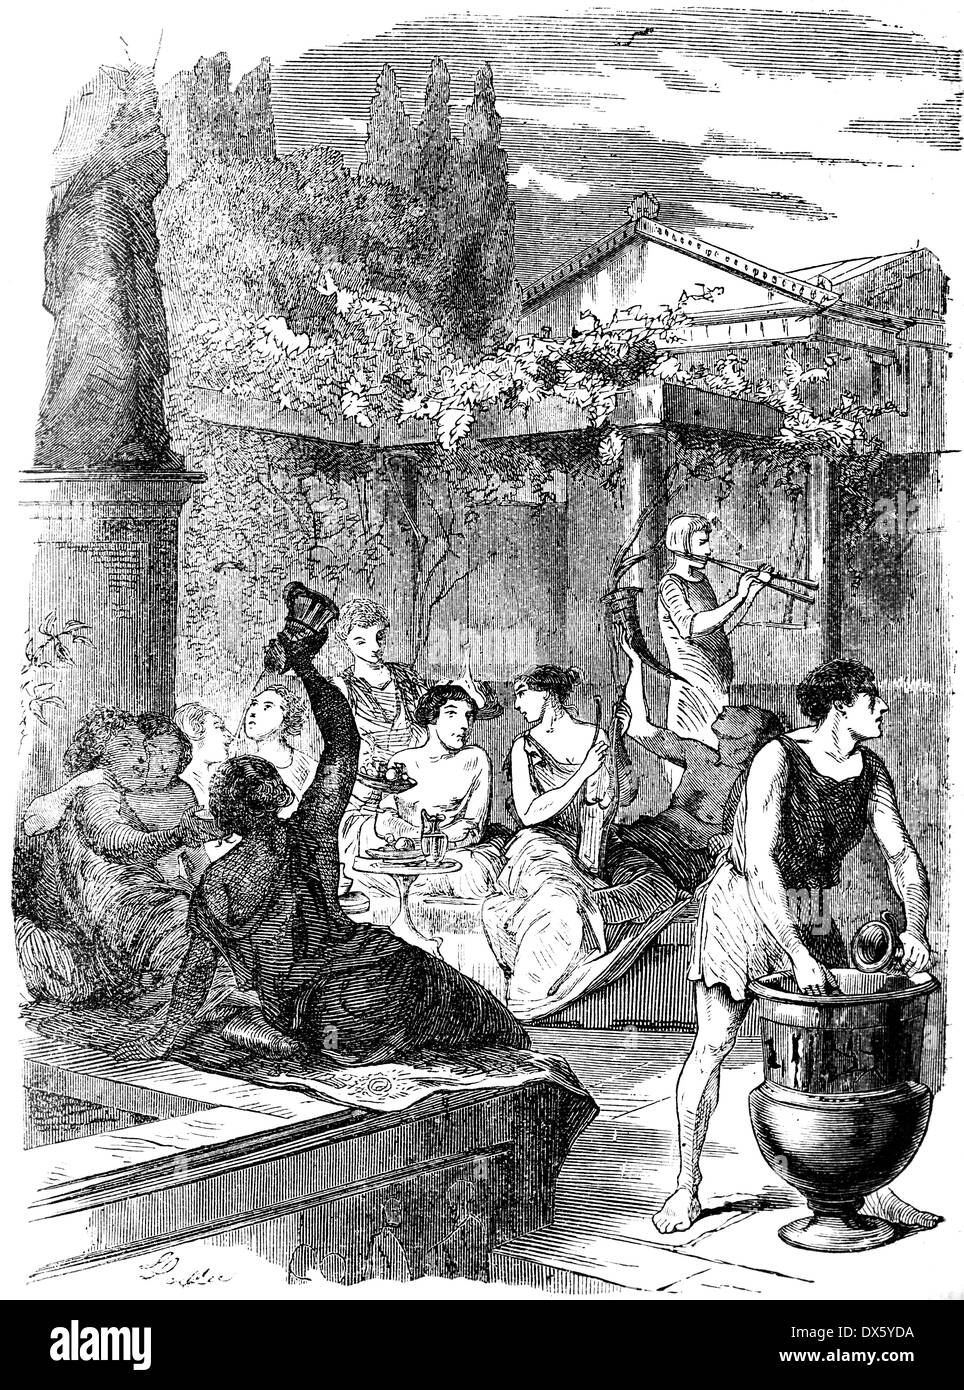 Fest-Szene, Illustration aus Buch datiert 1878 Stockfoto